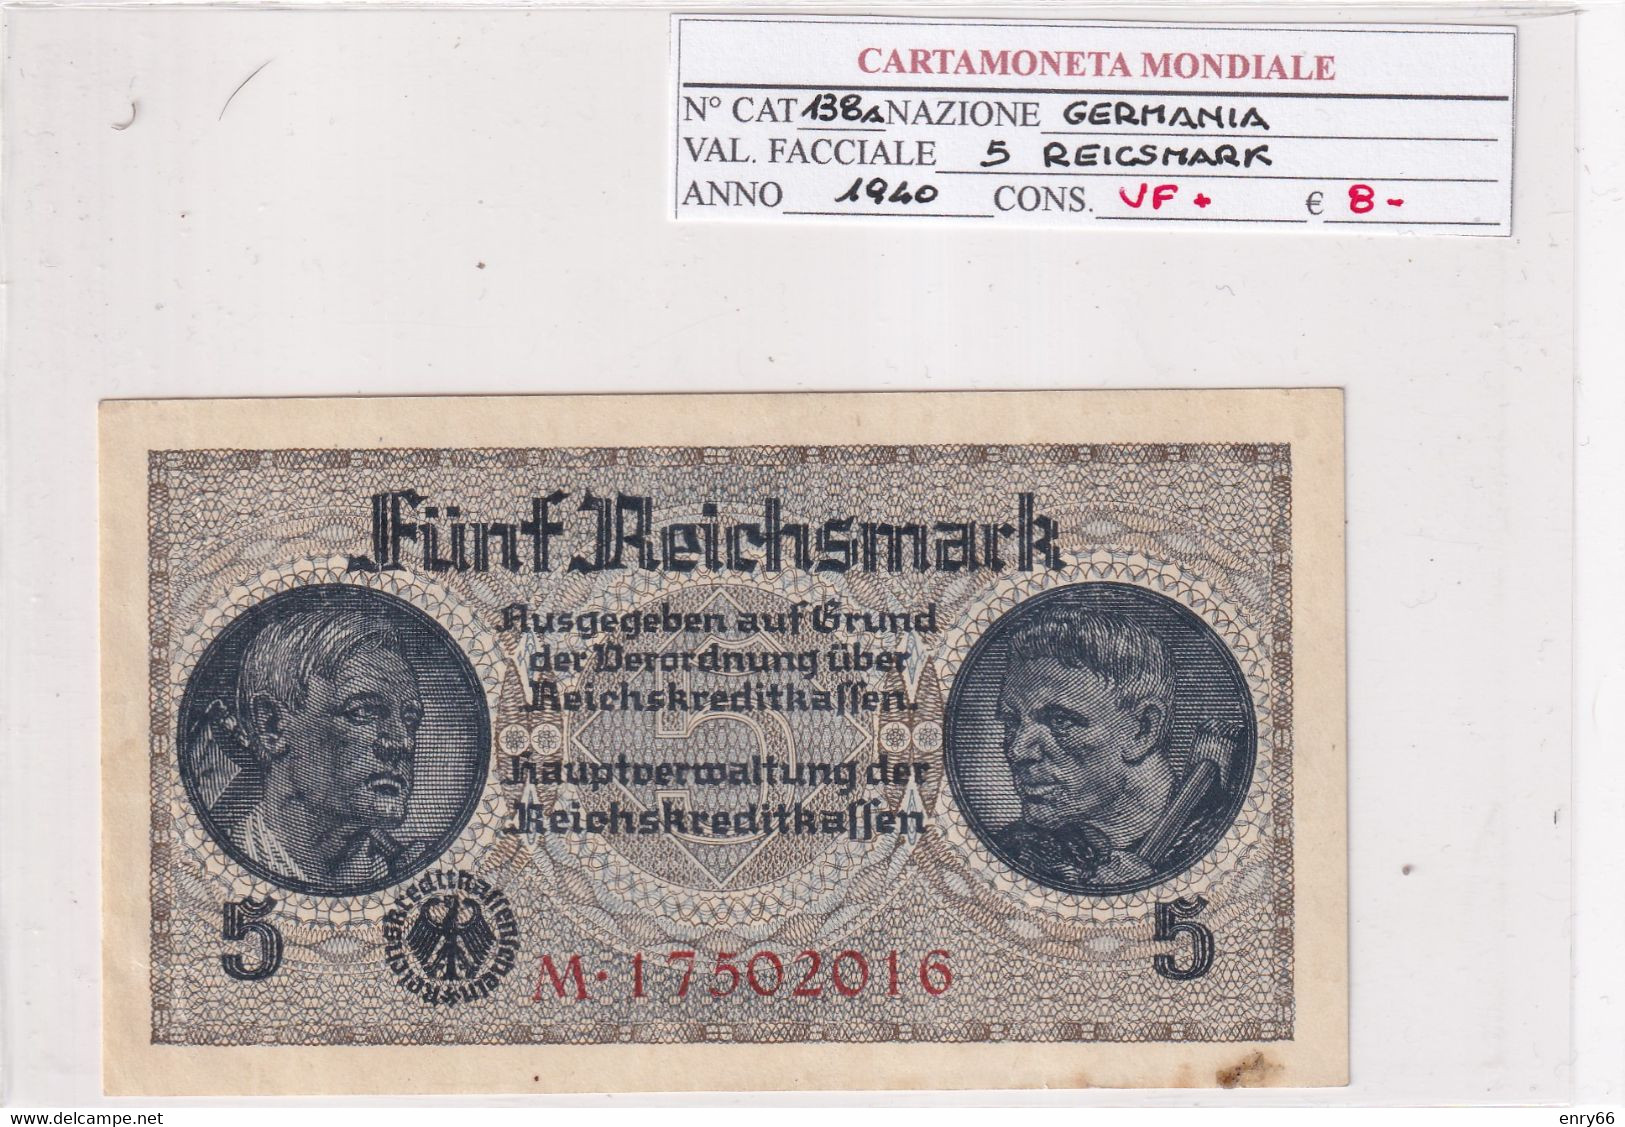 GERMANIA 5 REICHSMARK 1940  P 138A - 5 Reichsmark